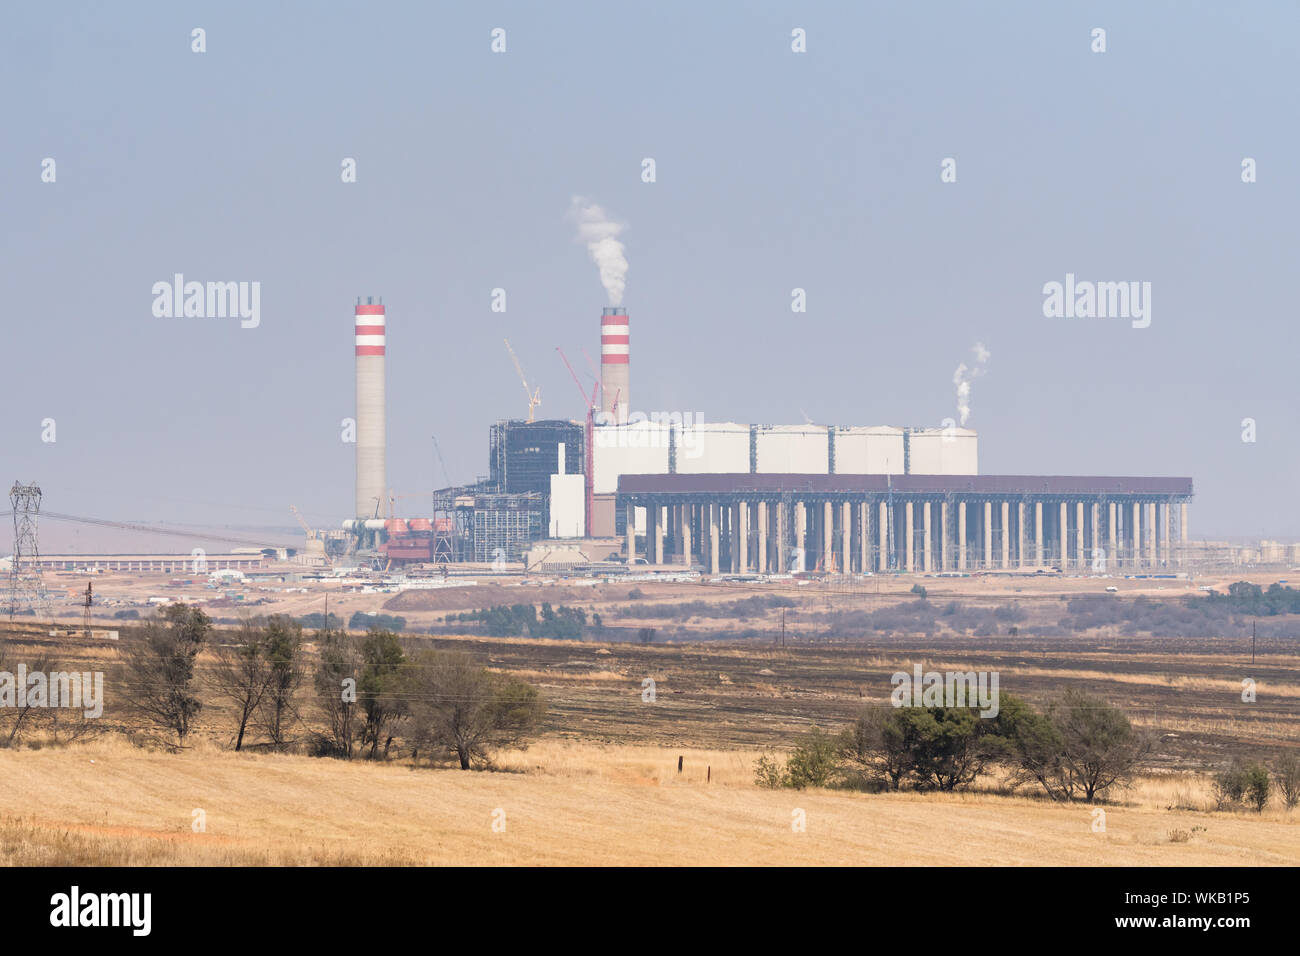 Kohlekraftwerk vom staatlichen Unternehmen ESKOM am Stadtrand von Johannesburg, Gauteng, Südafrika waberndem Rauch Umweltverschmutzung ausführen Stockfoto